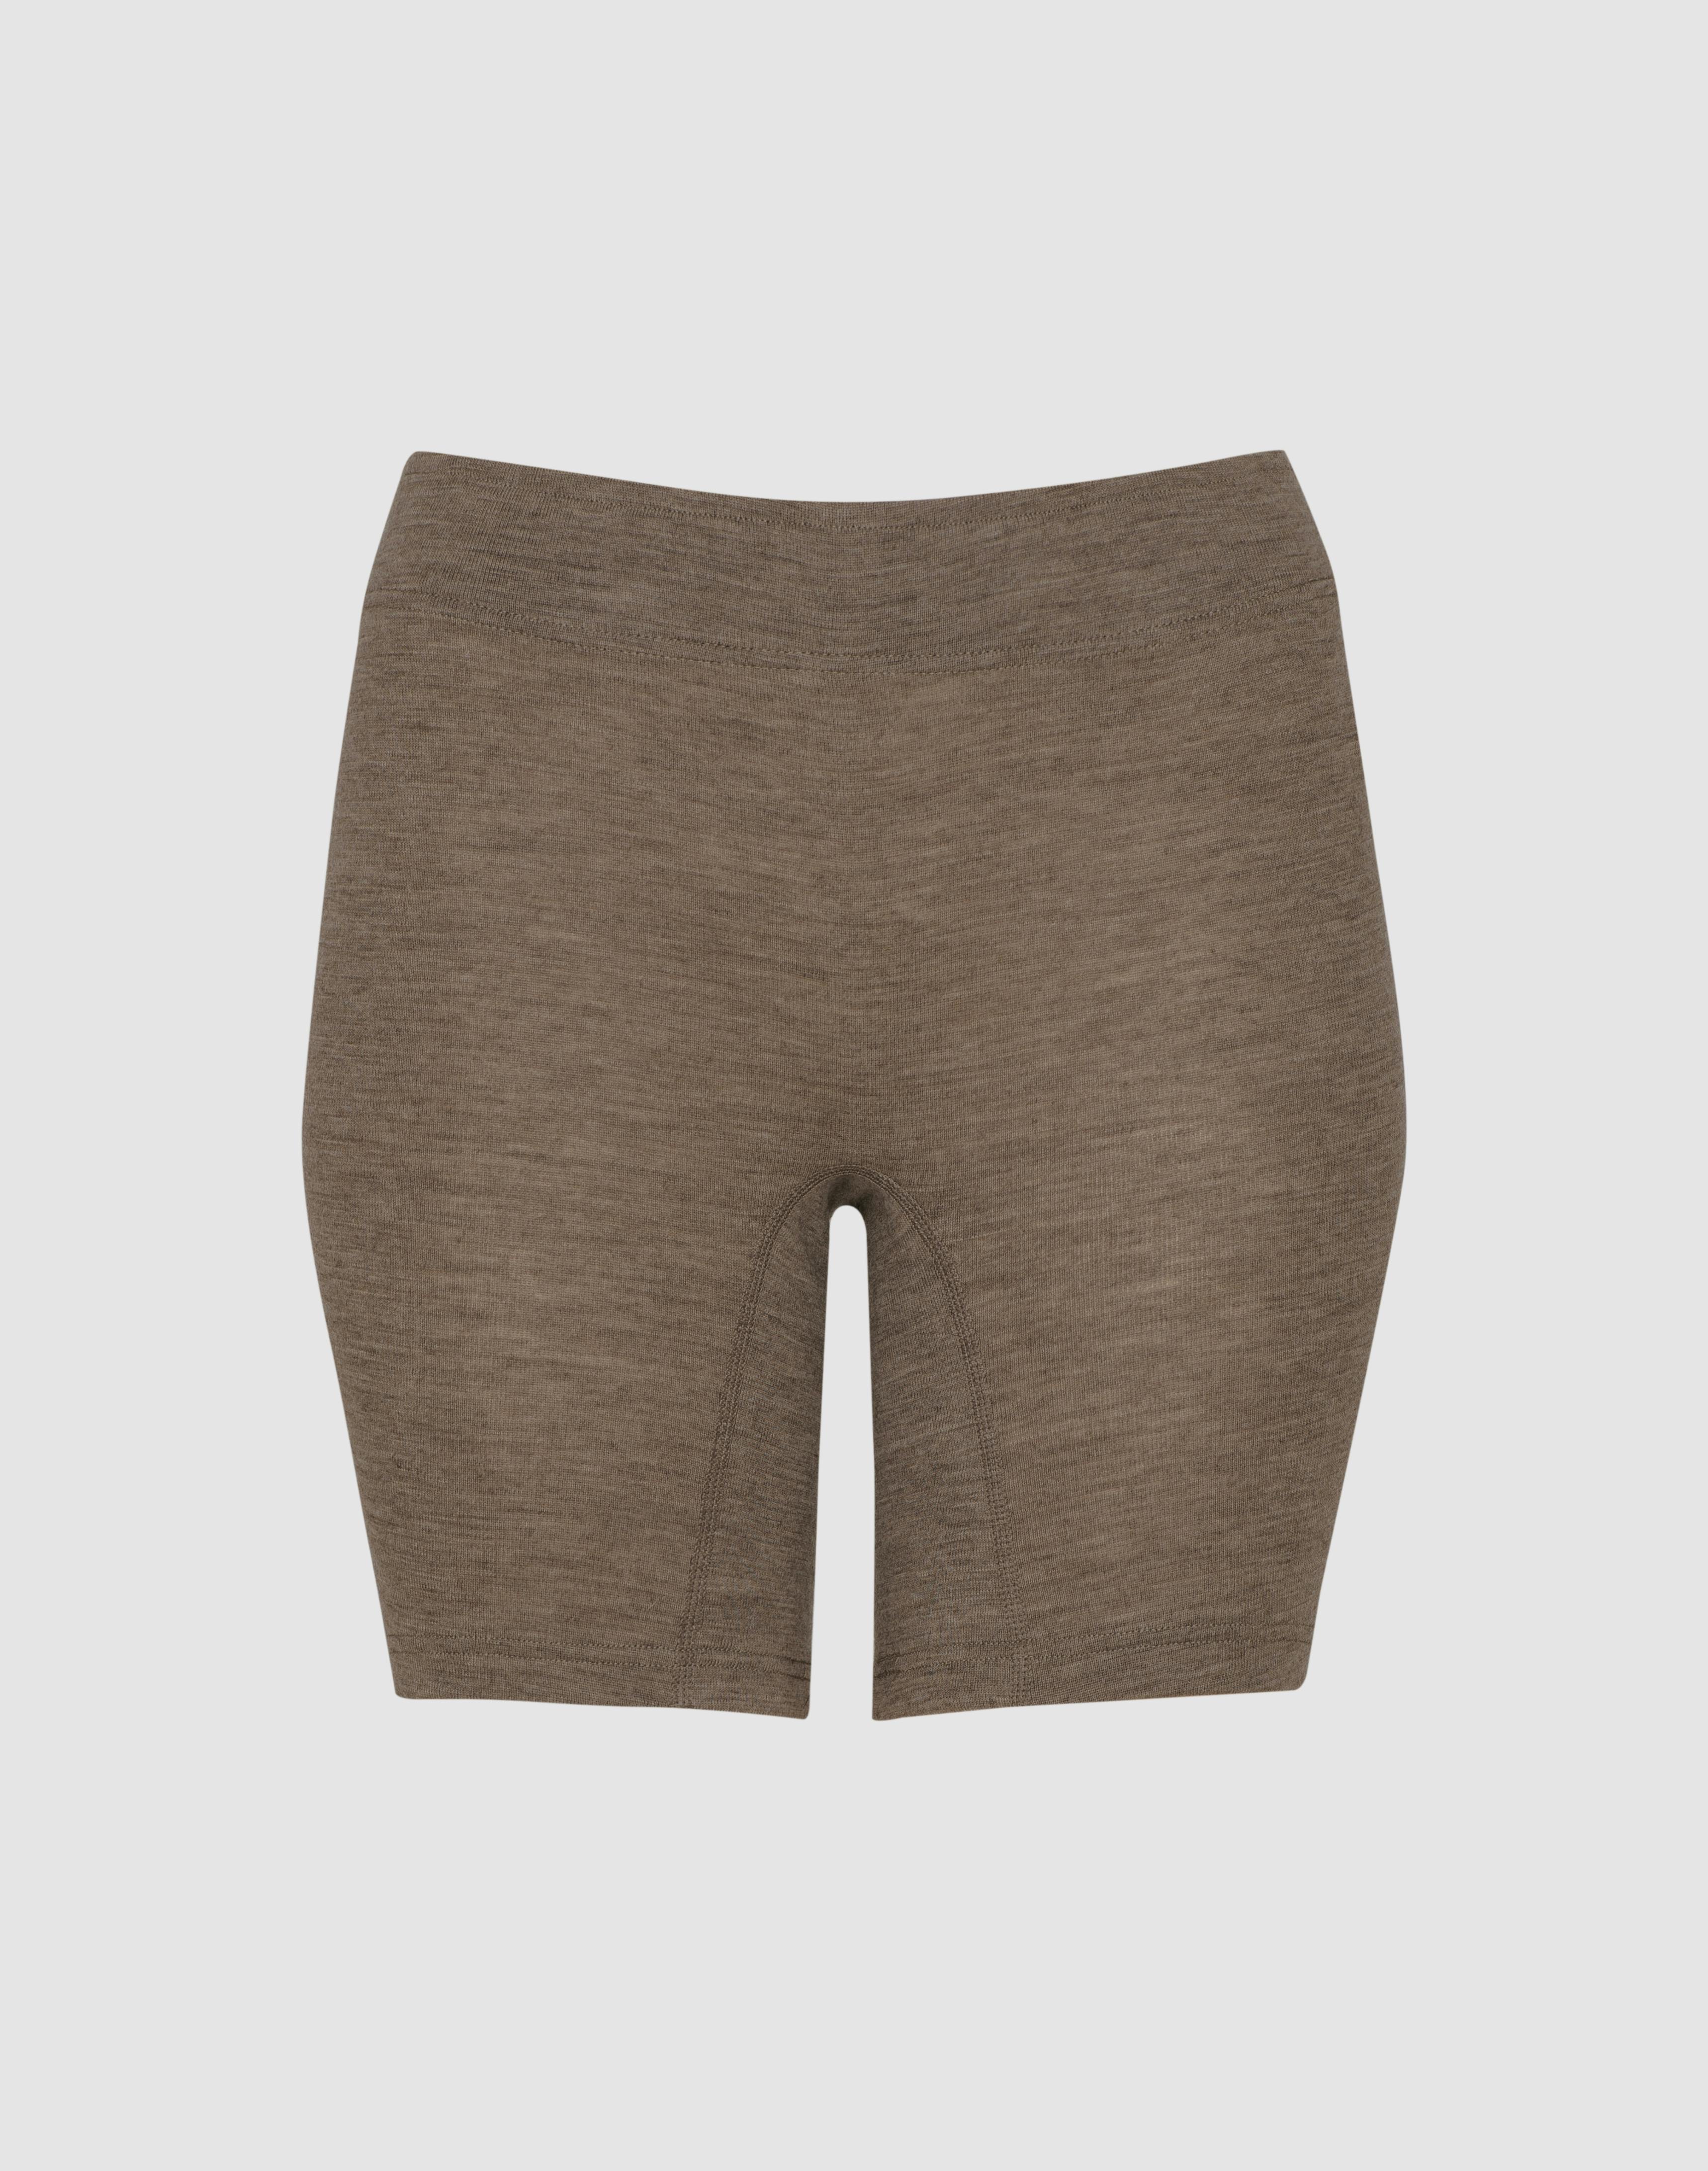 Women's merino wool shorts - Brown melange - Dilling